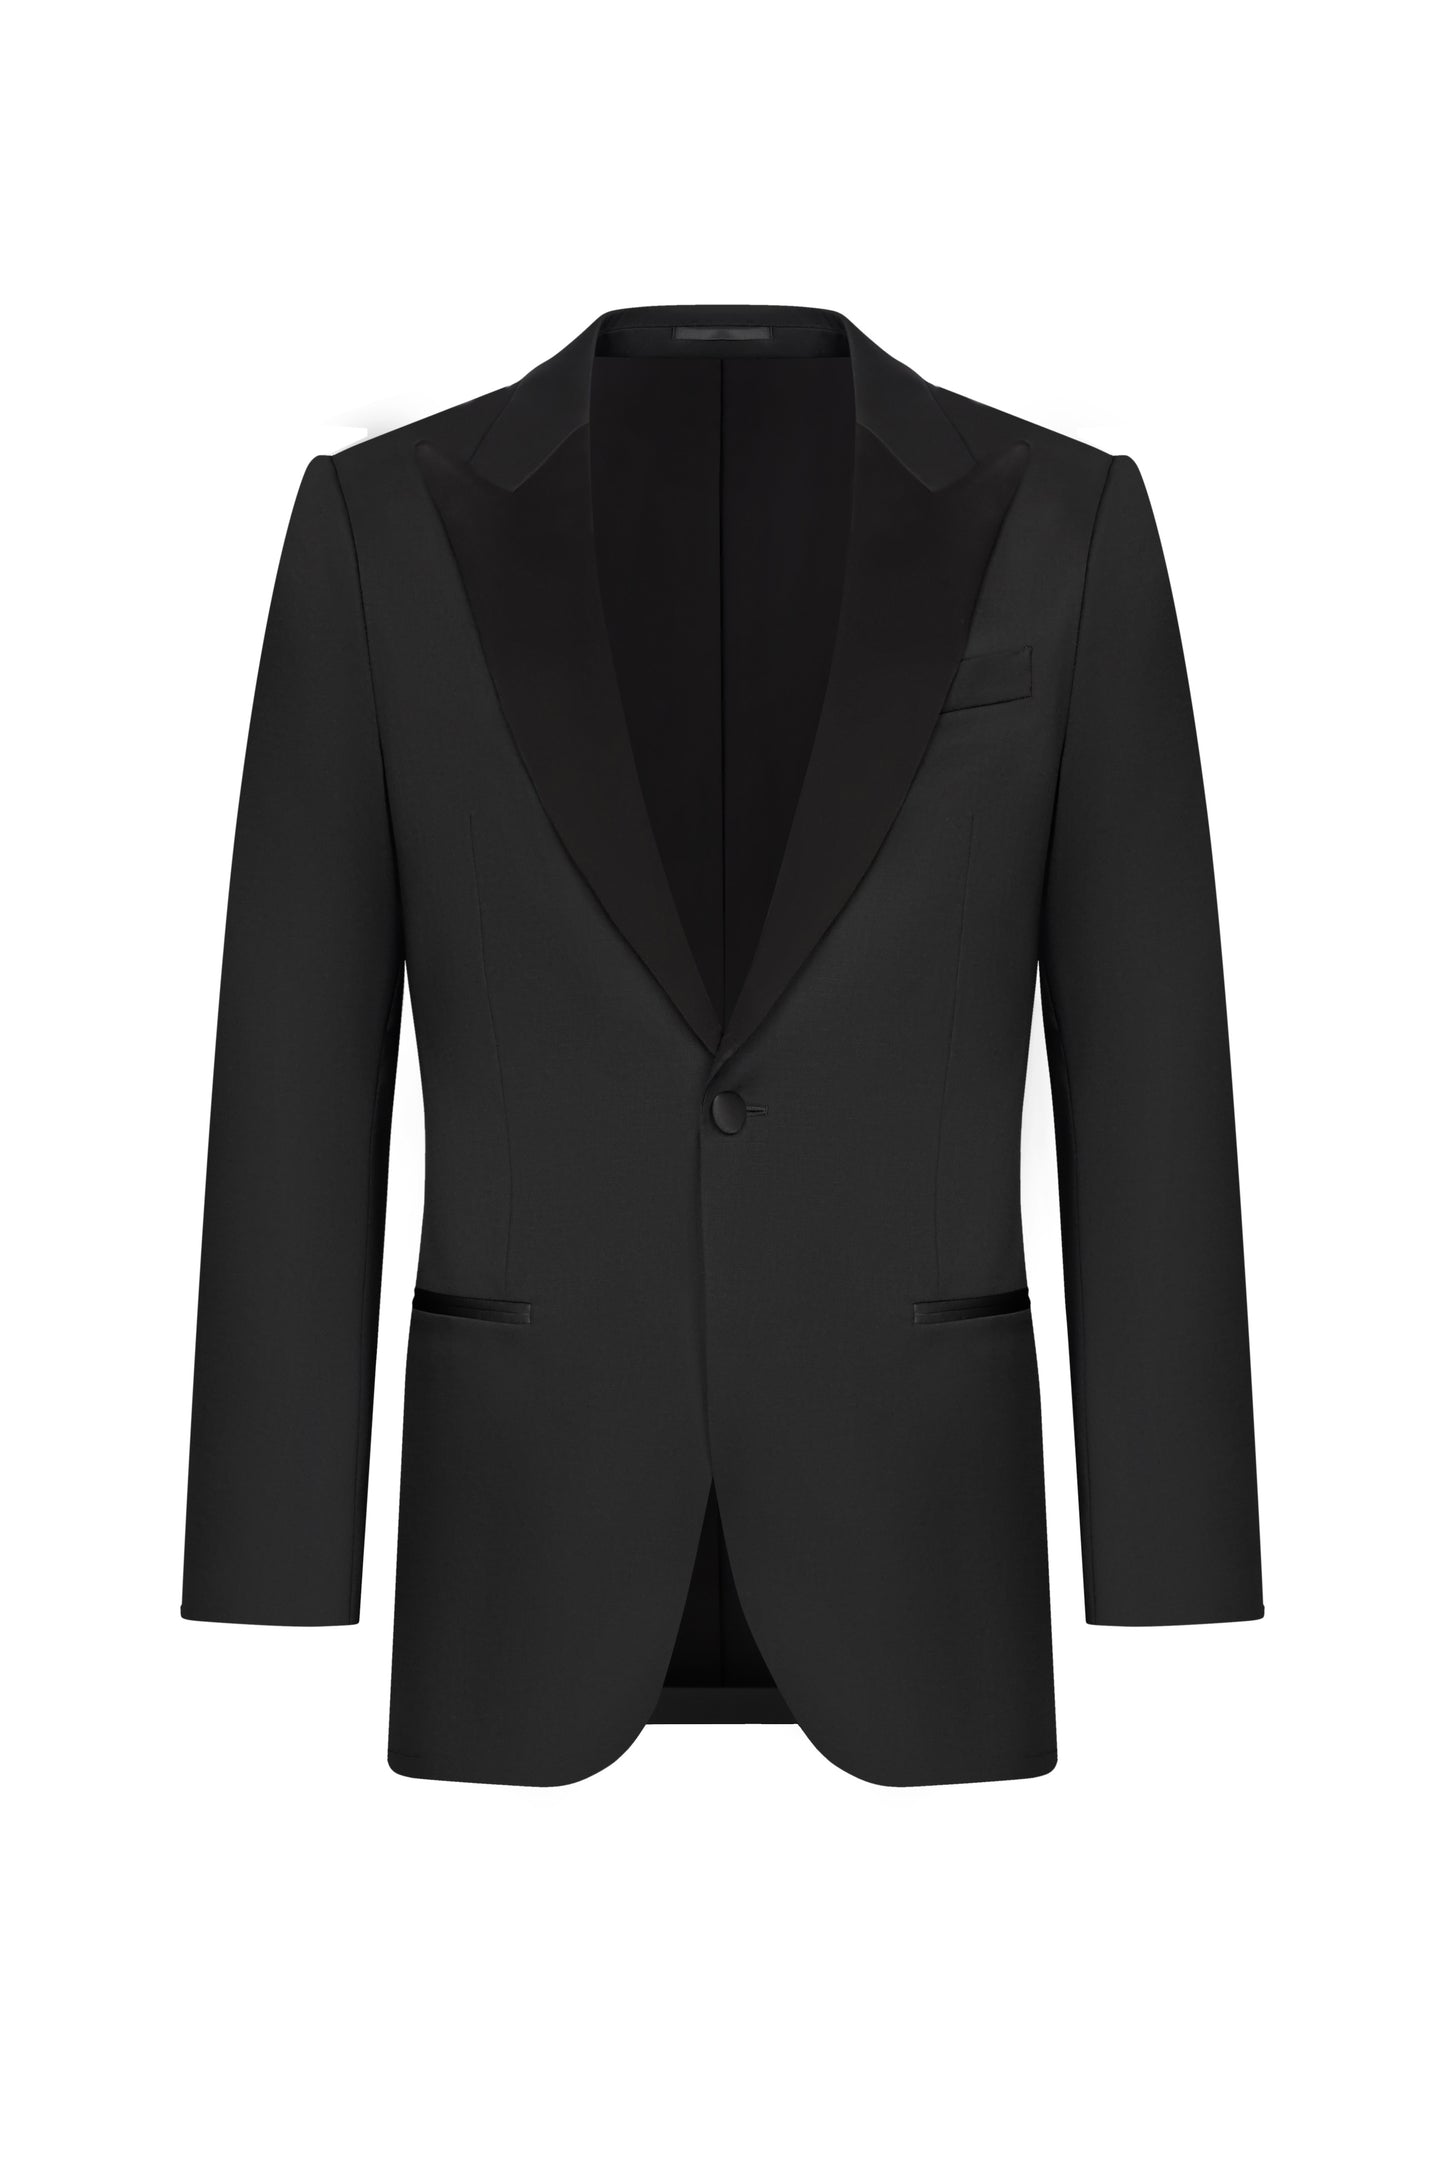 Reda Black Twill Custom Tuxedo Suit